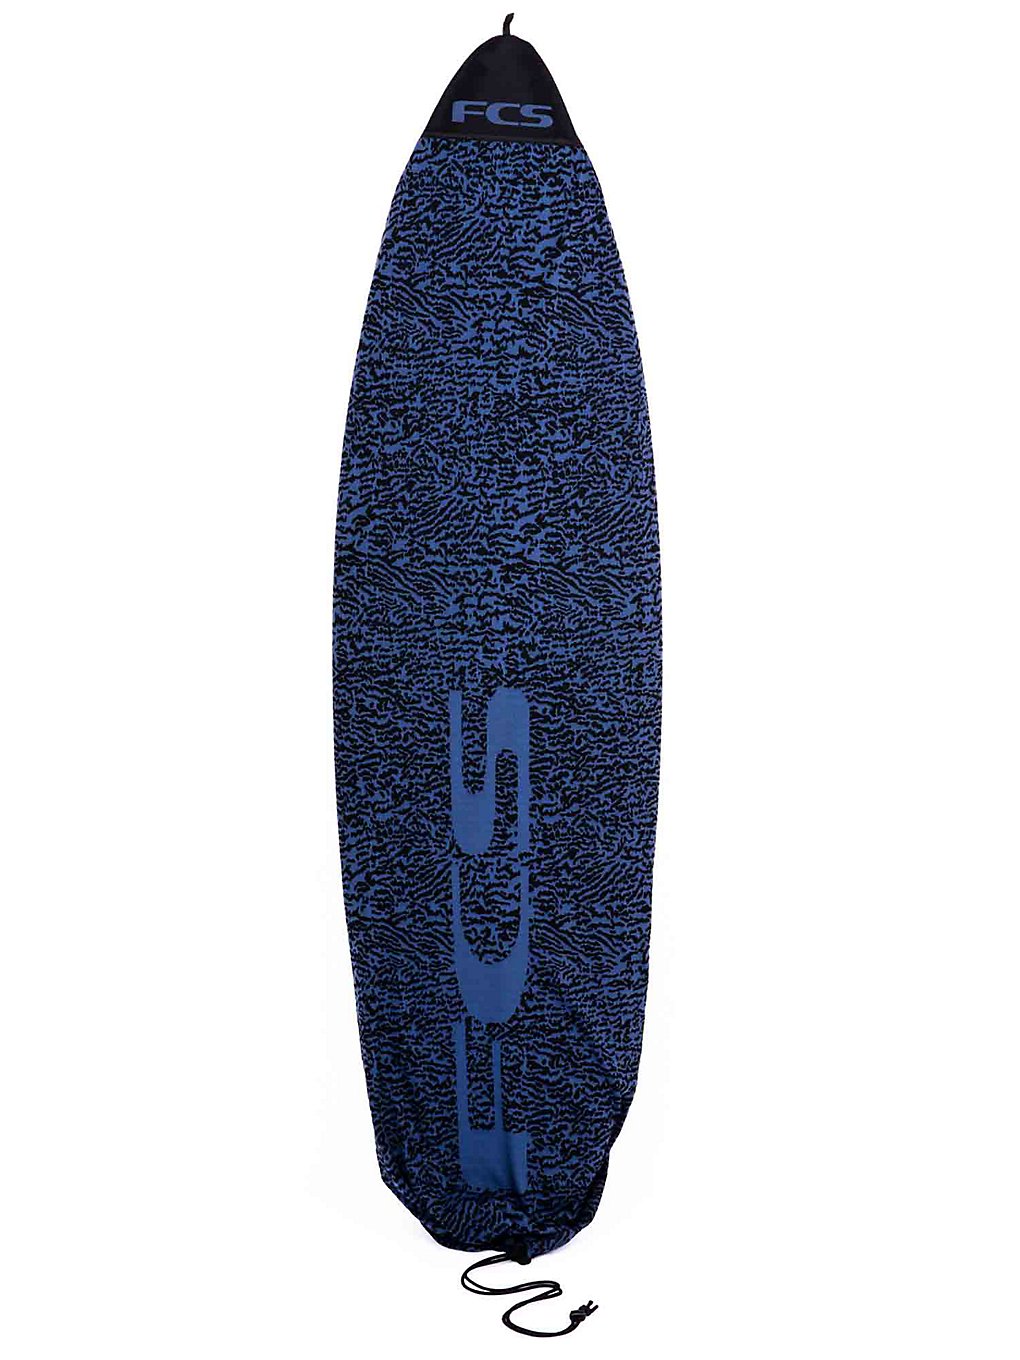 FCS Stretch All Purpose 6'0" Surfboard-Tasche stone blue kaufen